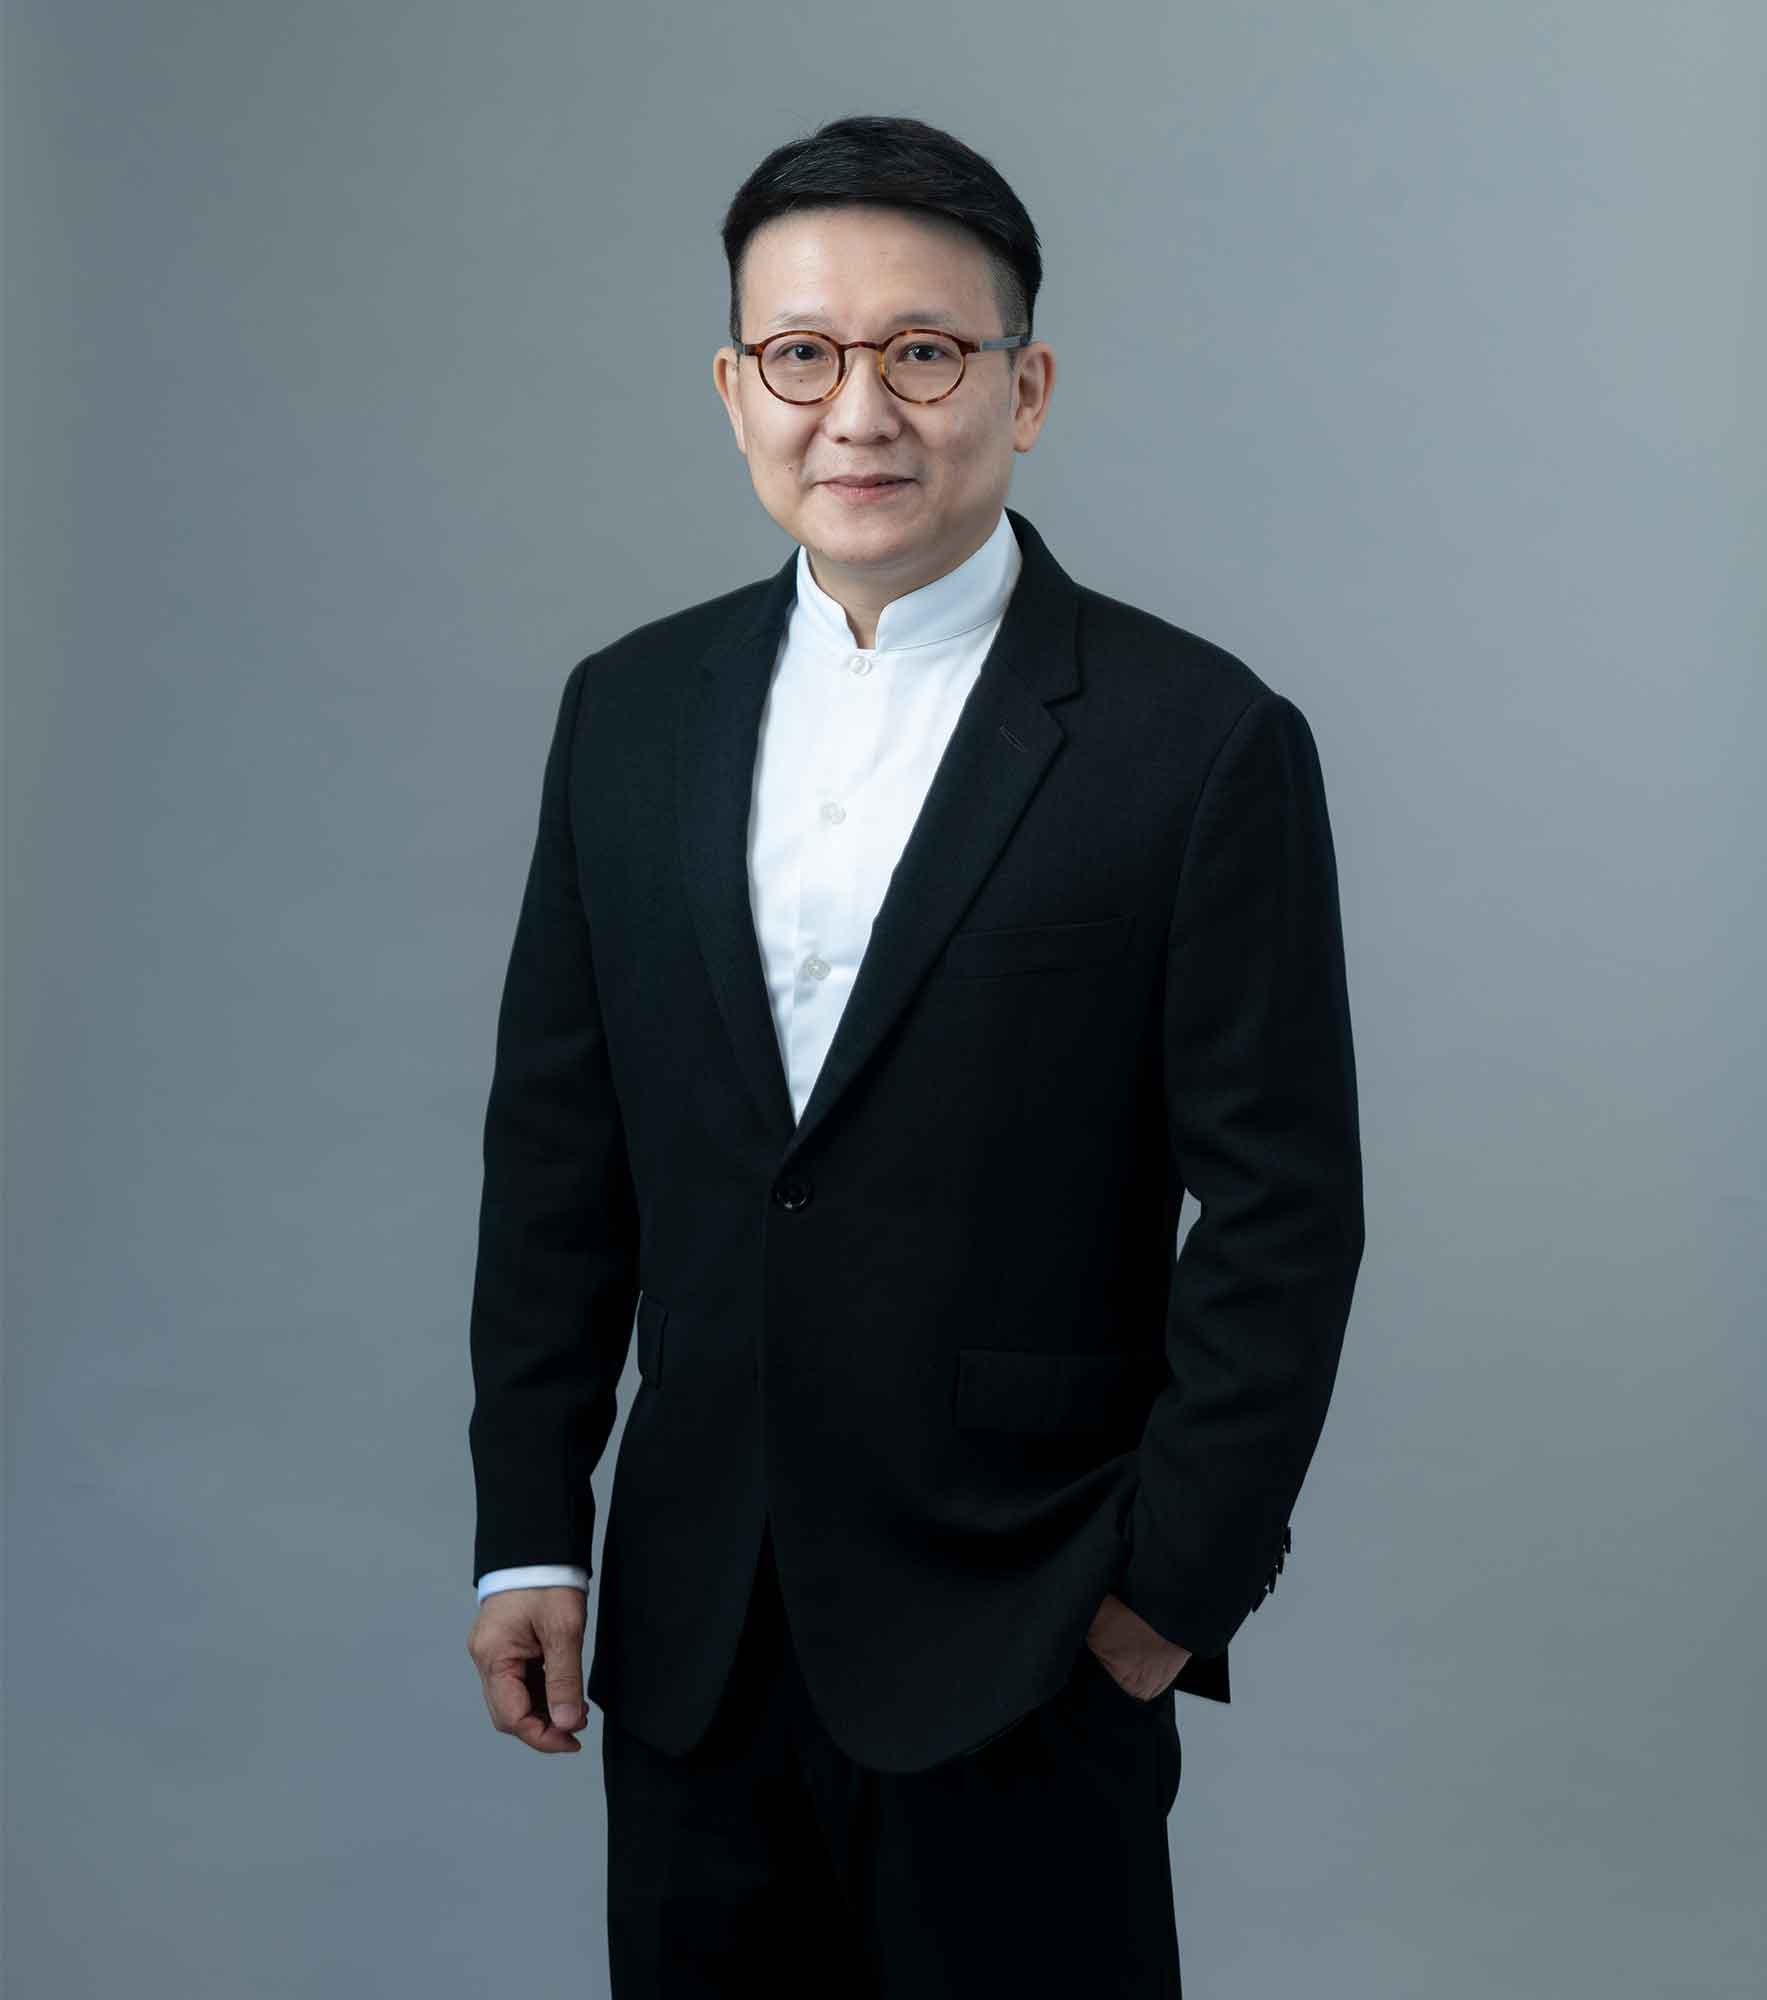 MK Leung, RLP